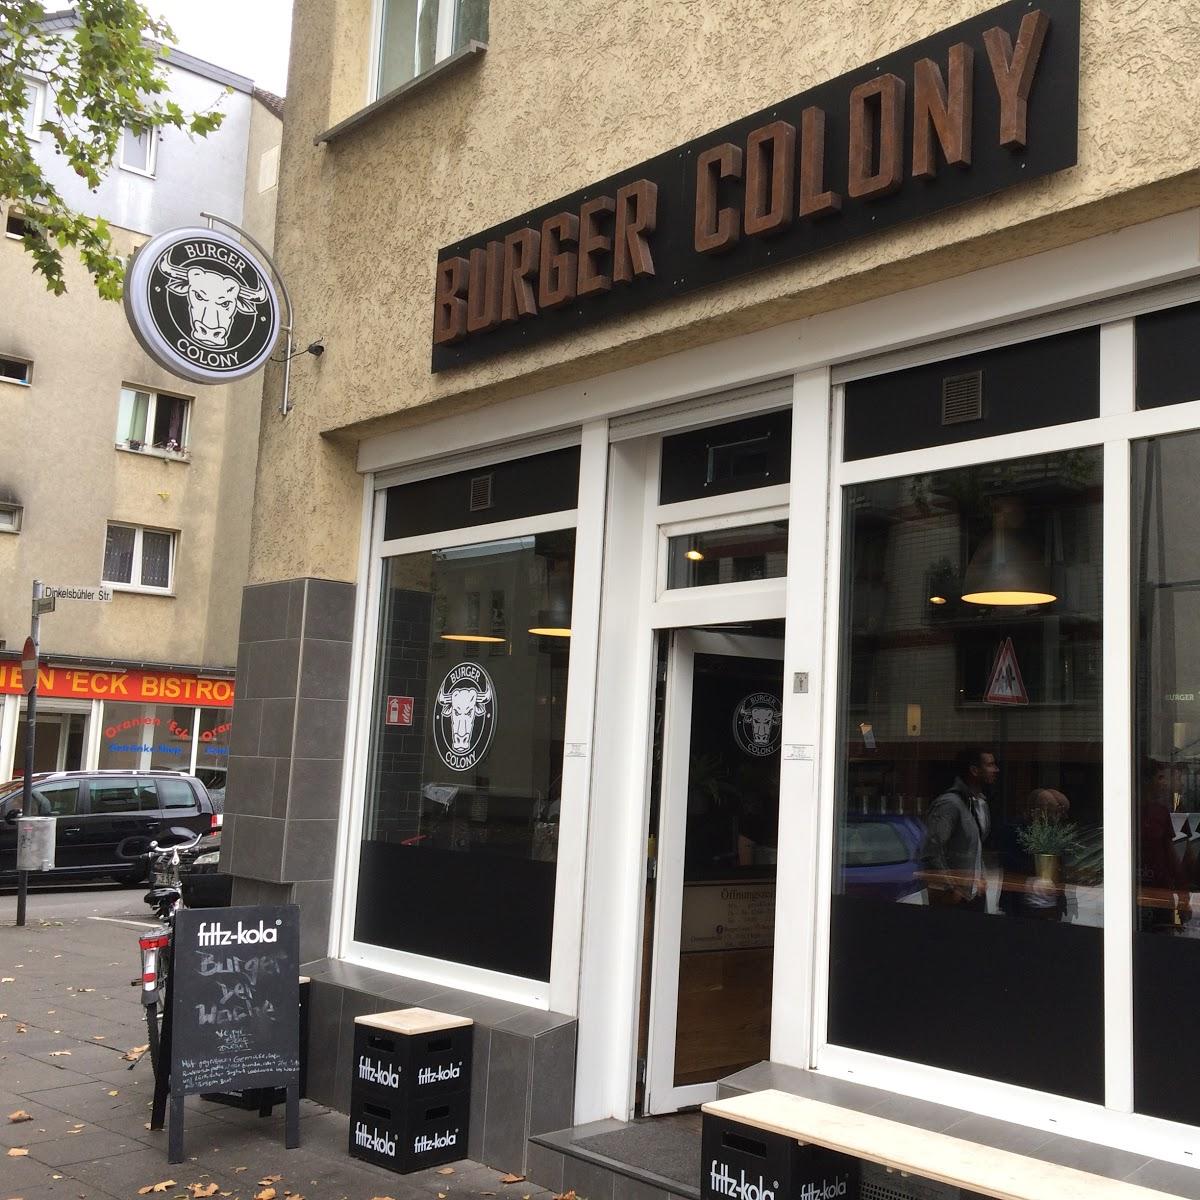 Restaurant "Burger Colony" in Köln